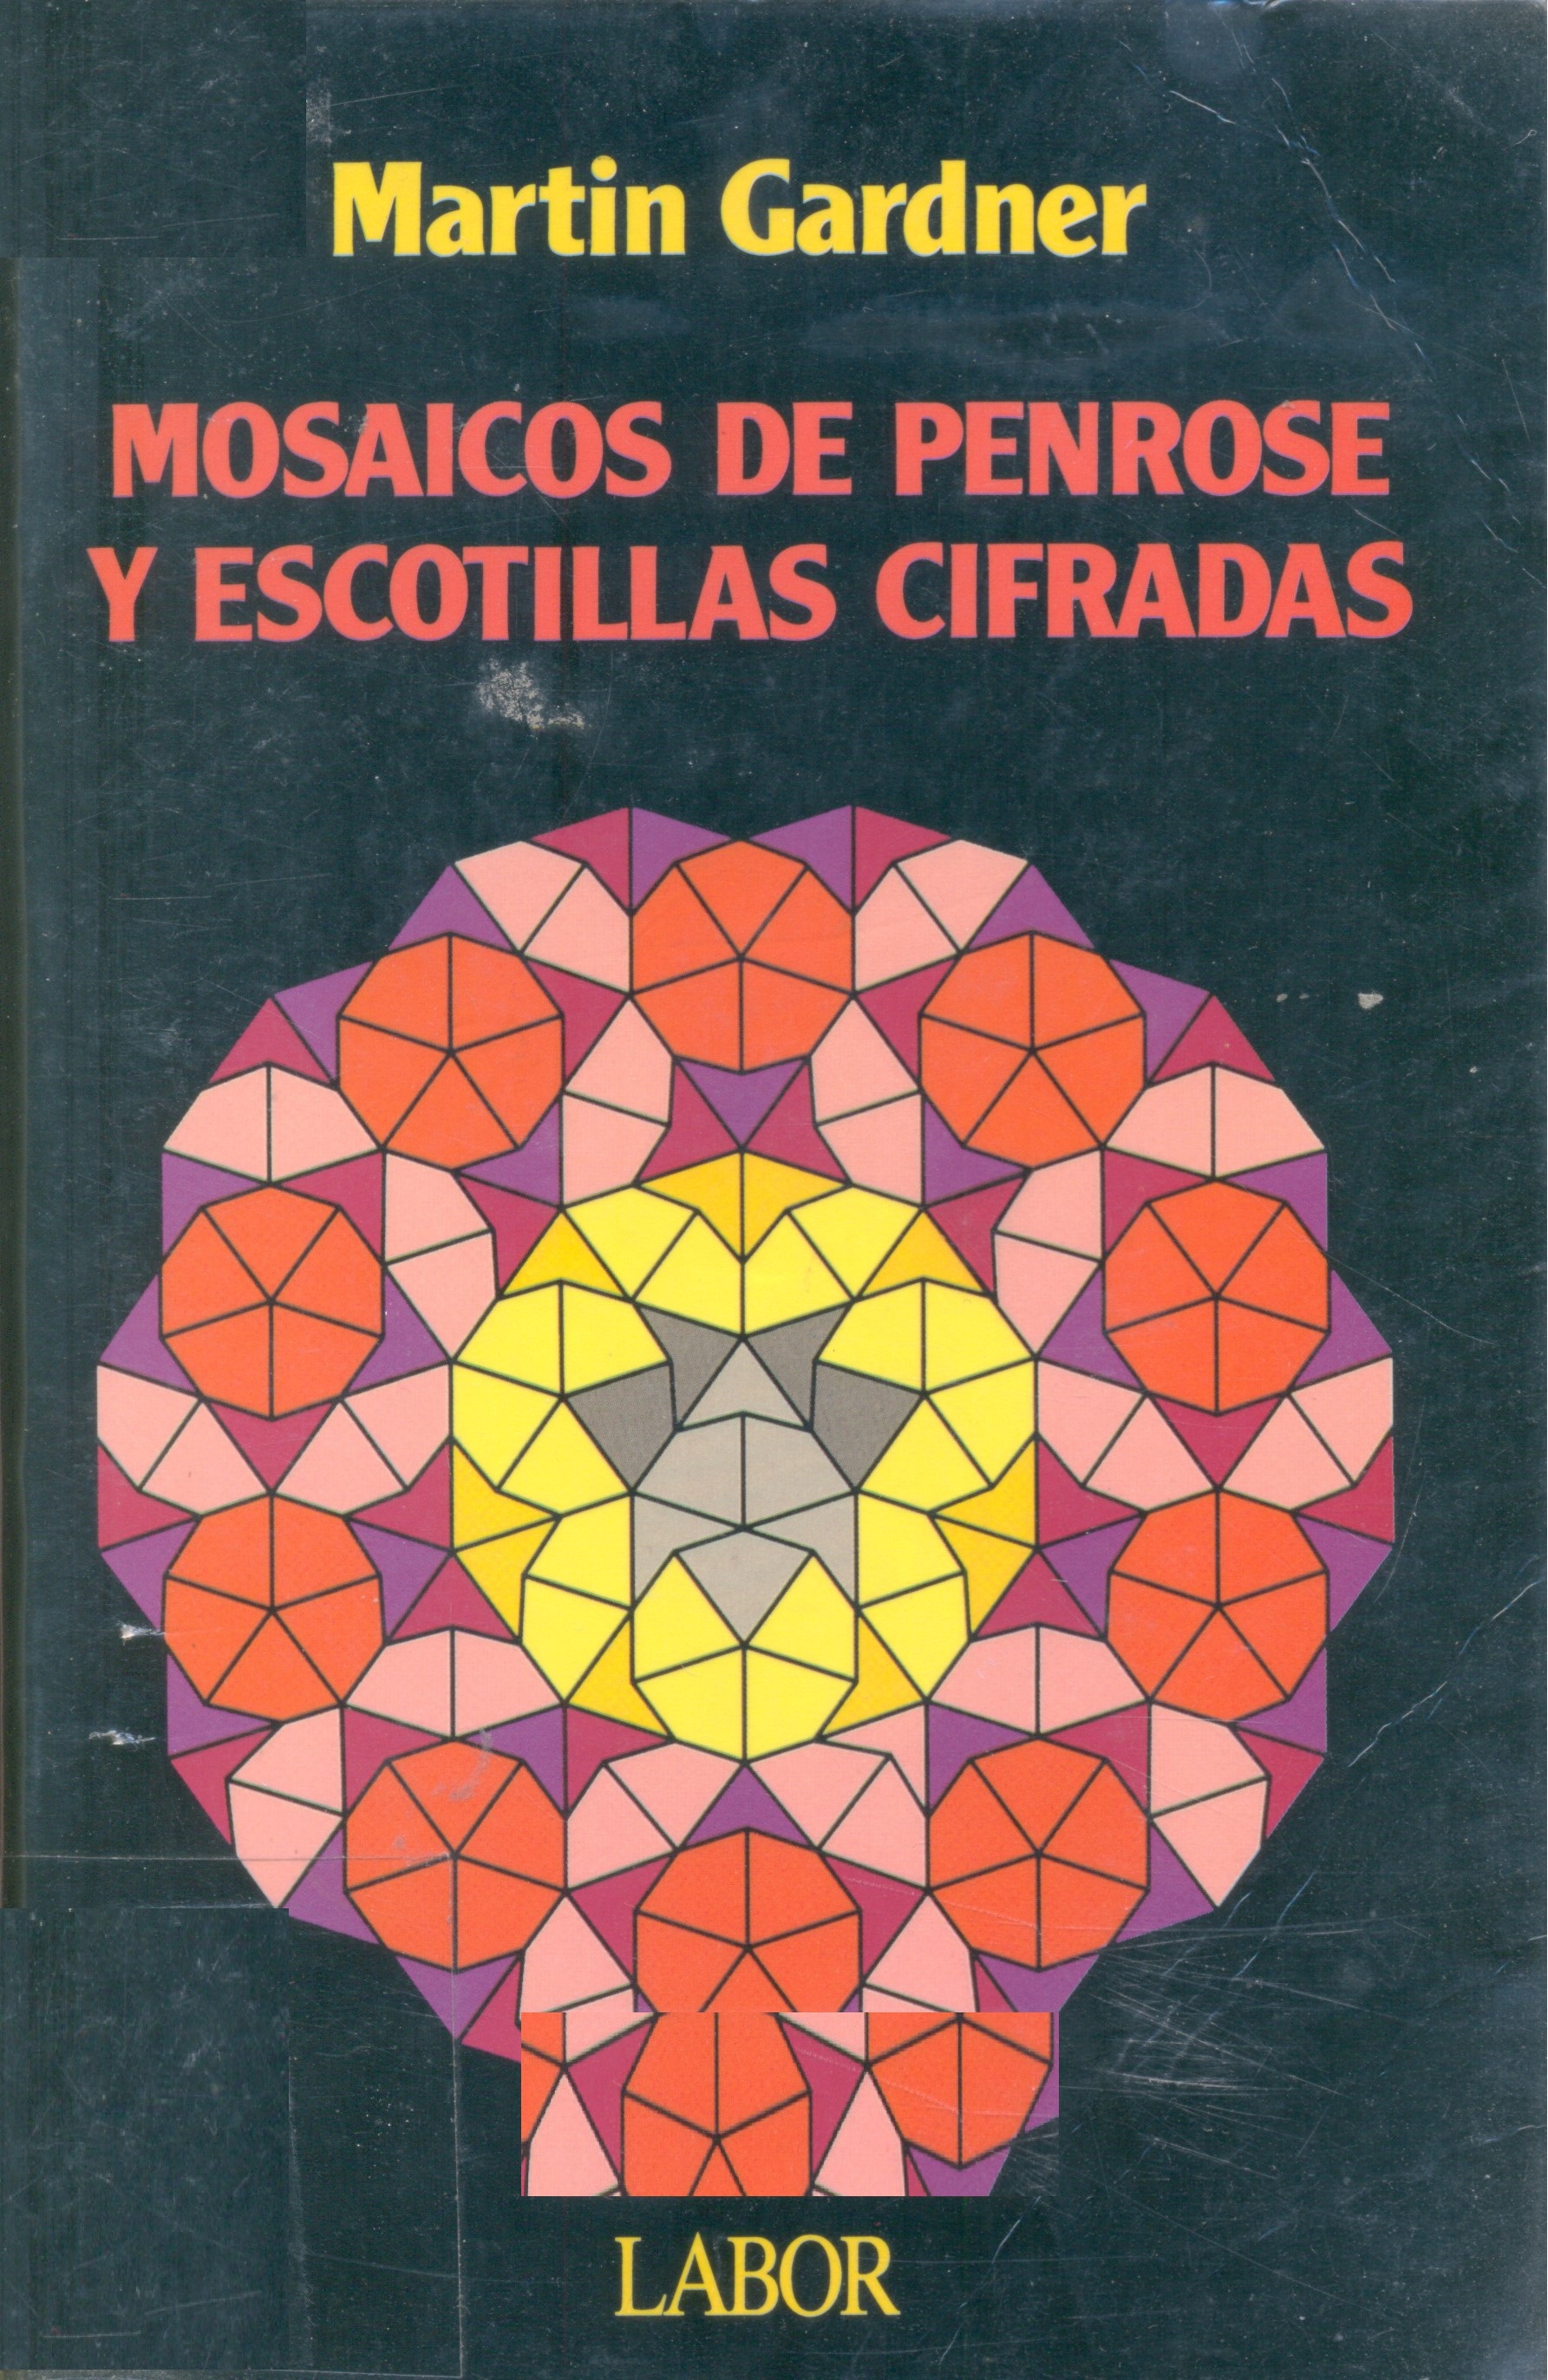 Mosaicos de Penrose y escotillas cifradas / Martin Gardner ; [traducción: Luis Bou]